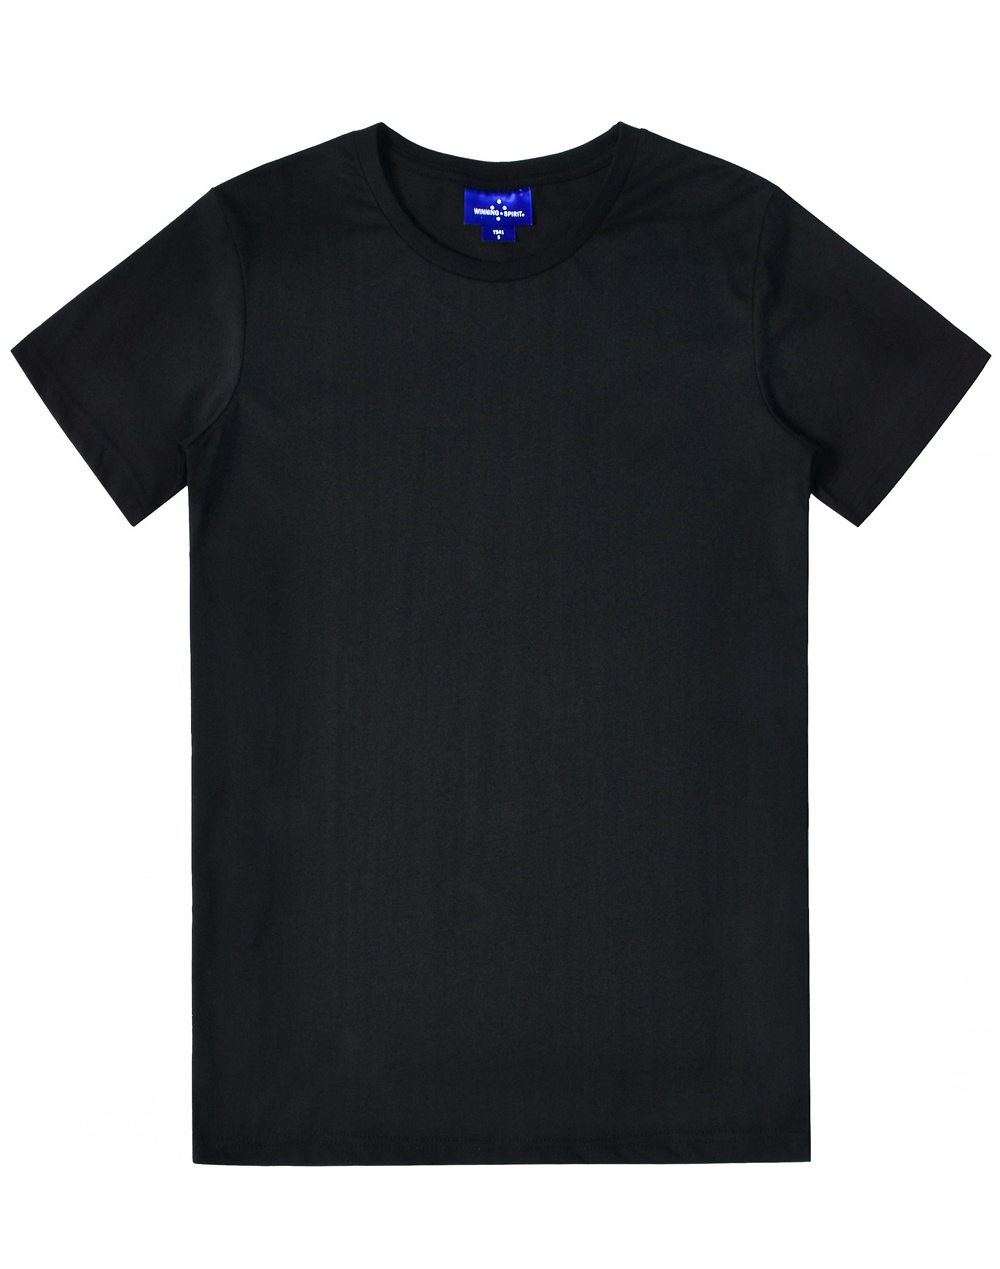 Custom Printed Premium T-Shirts Men's Crew Neck Online in Perth Australia